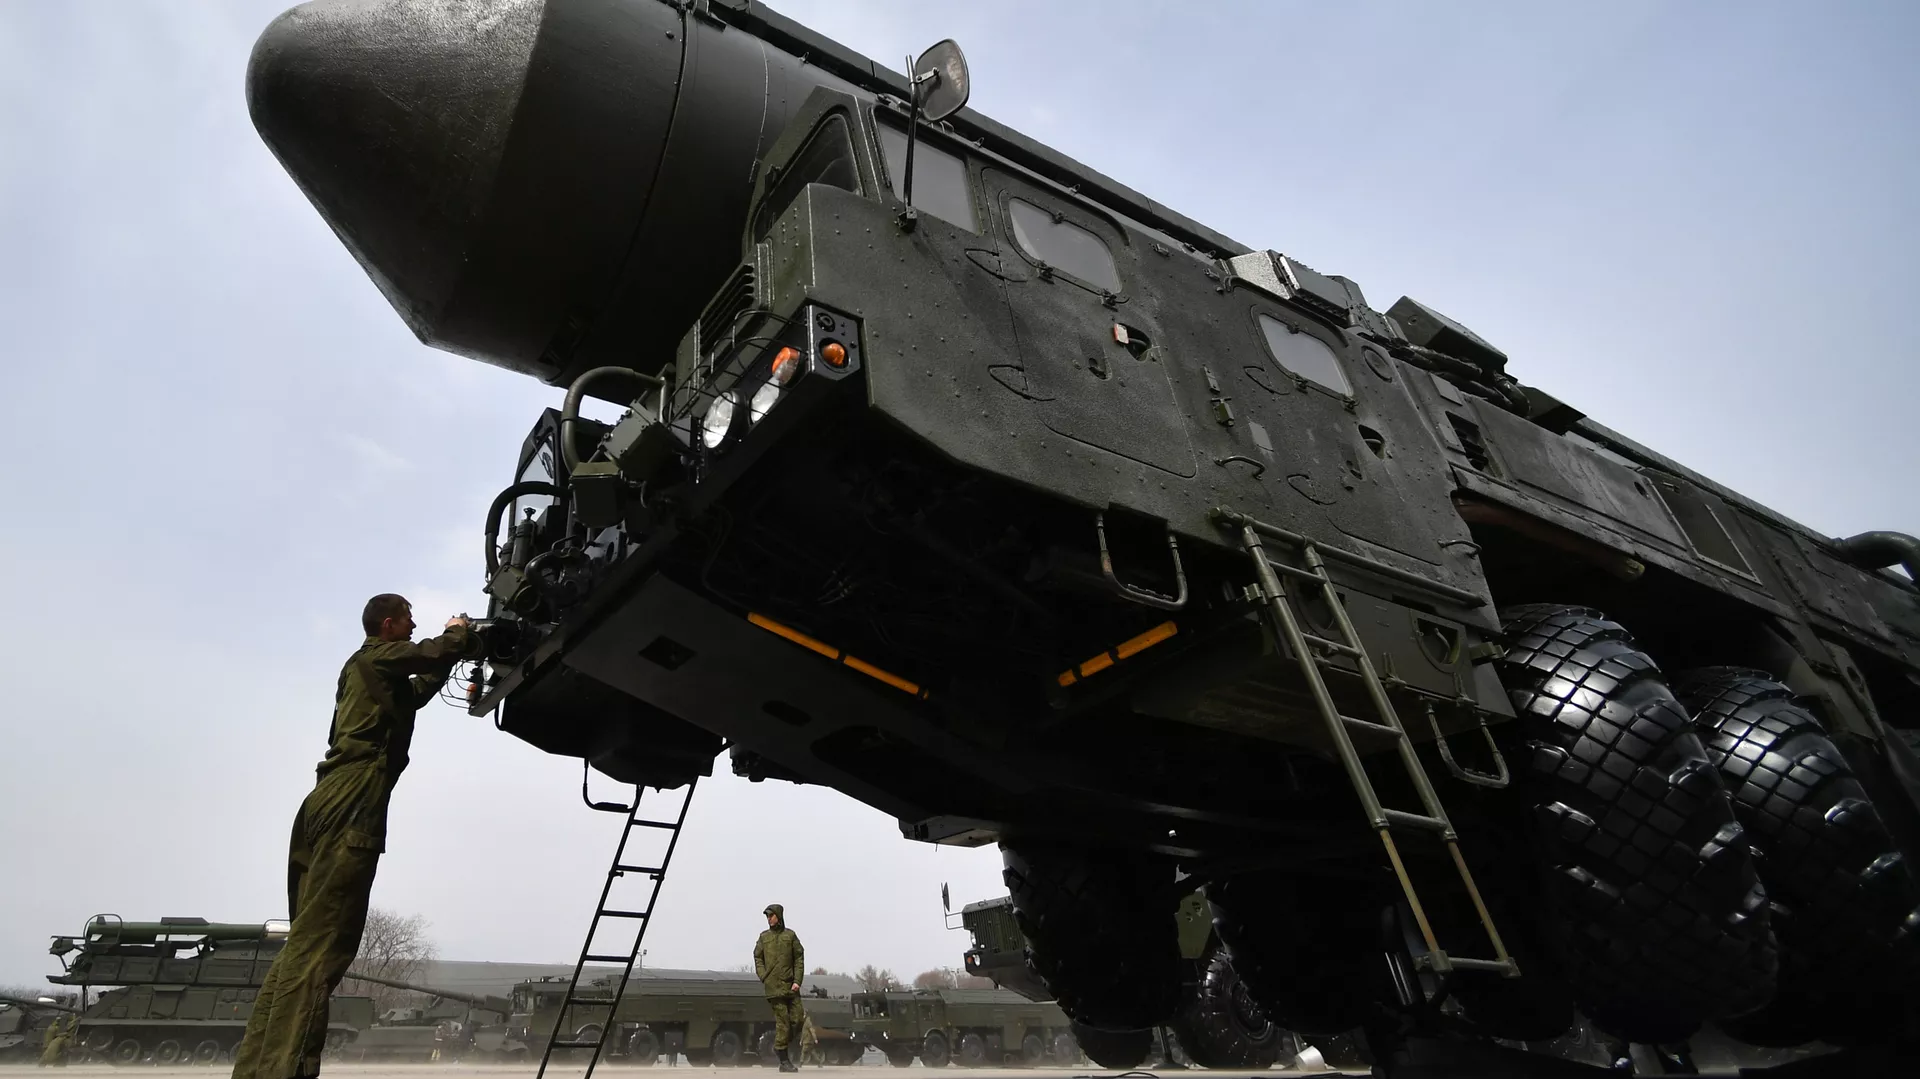 طواقم صواريخ "يارس" النووية الروسية تتدرب على تنفيذ مهام خاصة (فيديو)